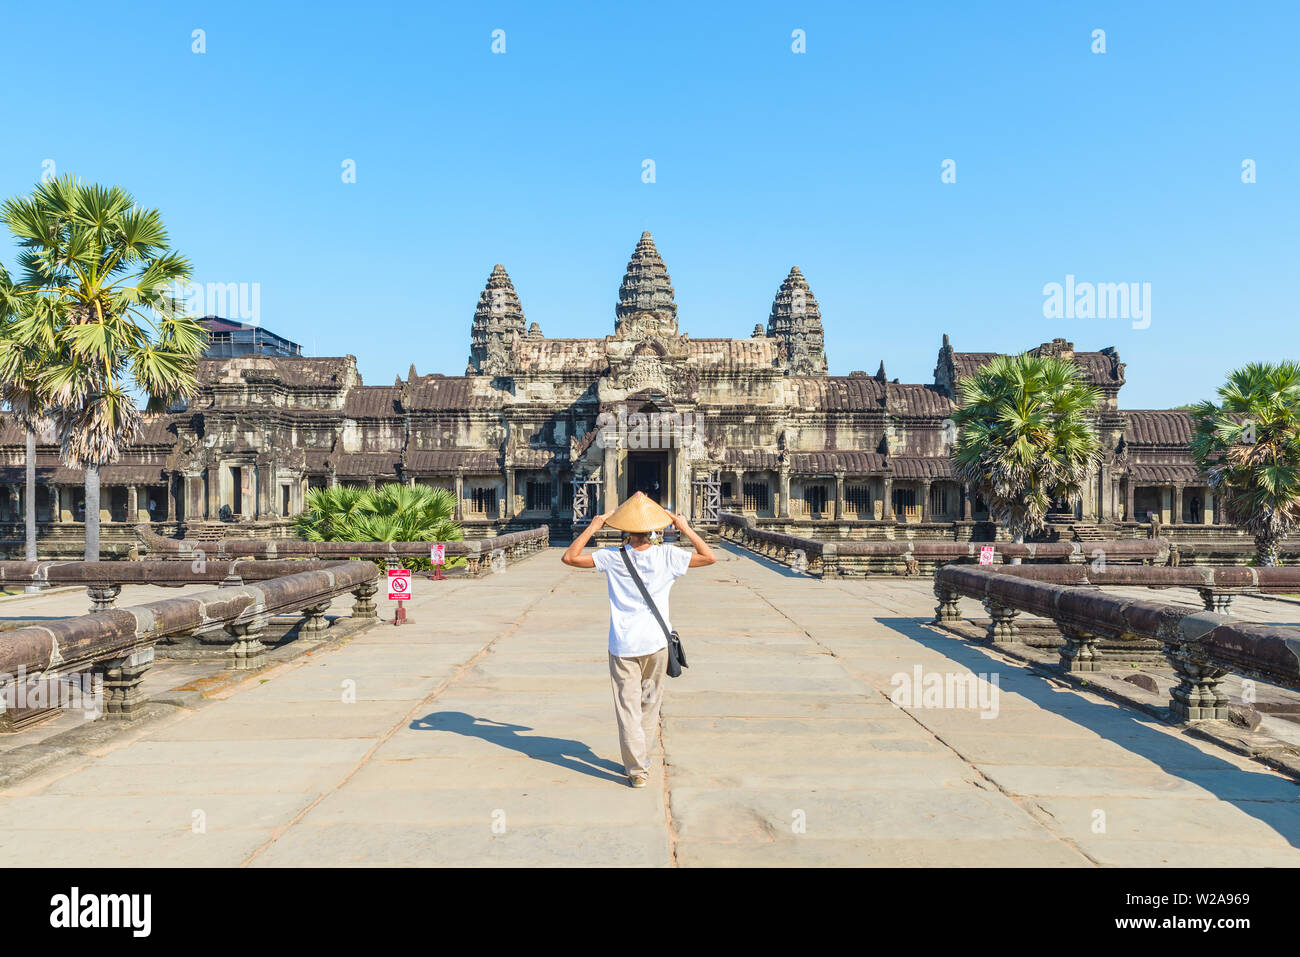 Eine touristische besuchen die Ruinen von Angkor Wat bei Sonnenaufgang, Reiseziel Kambodscha. Frau mit traditionellen Hut und erhobenen Armen, Rückansicht, Hauptfassade und Stockfoto